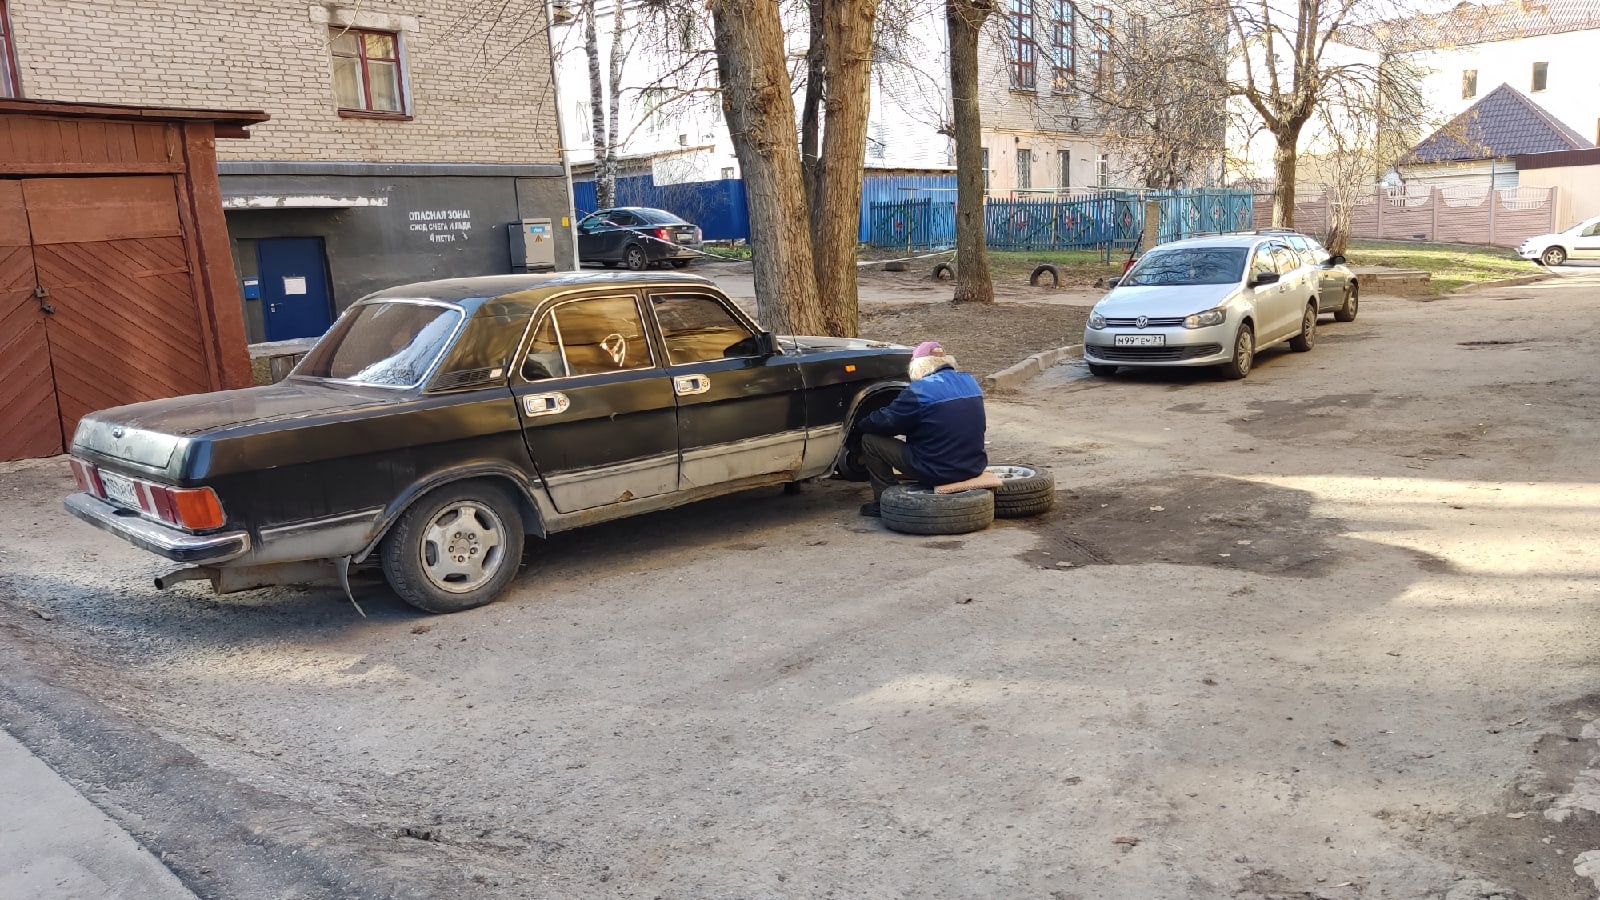 Районы Нижнего Новгорода начали очищать от старых авто